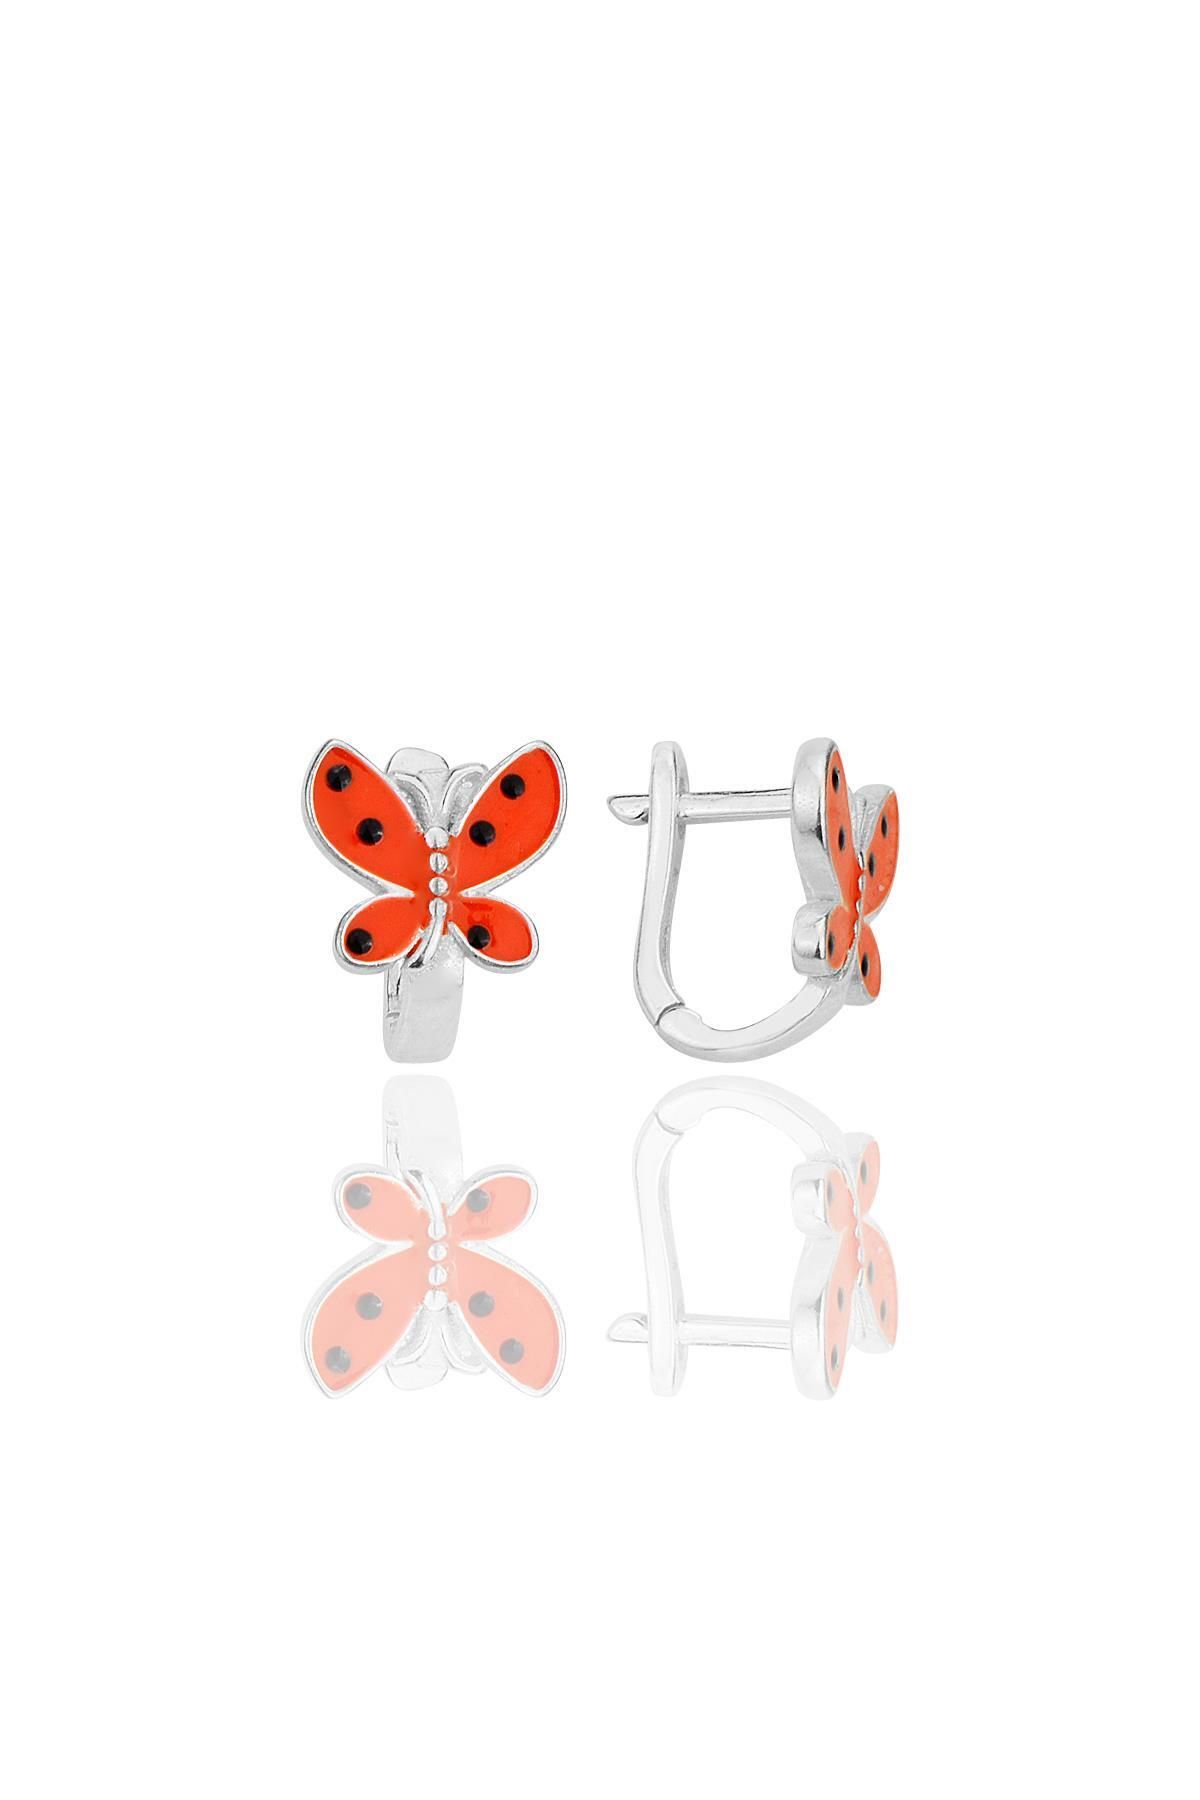 Söğütlü Silver Gümüş kırmızı mineli kelebek çocuk küpesi SGTL12367RODAJ